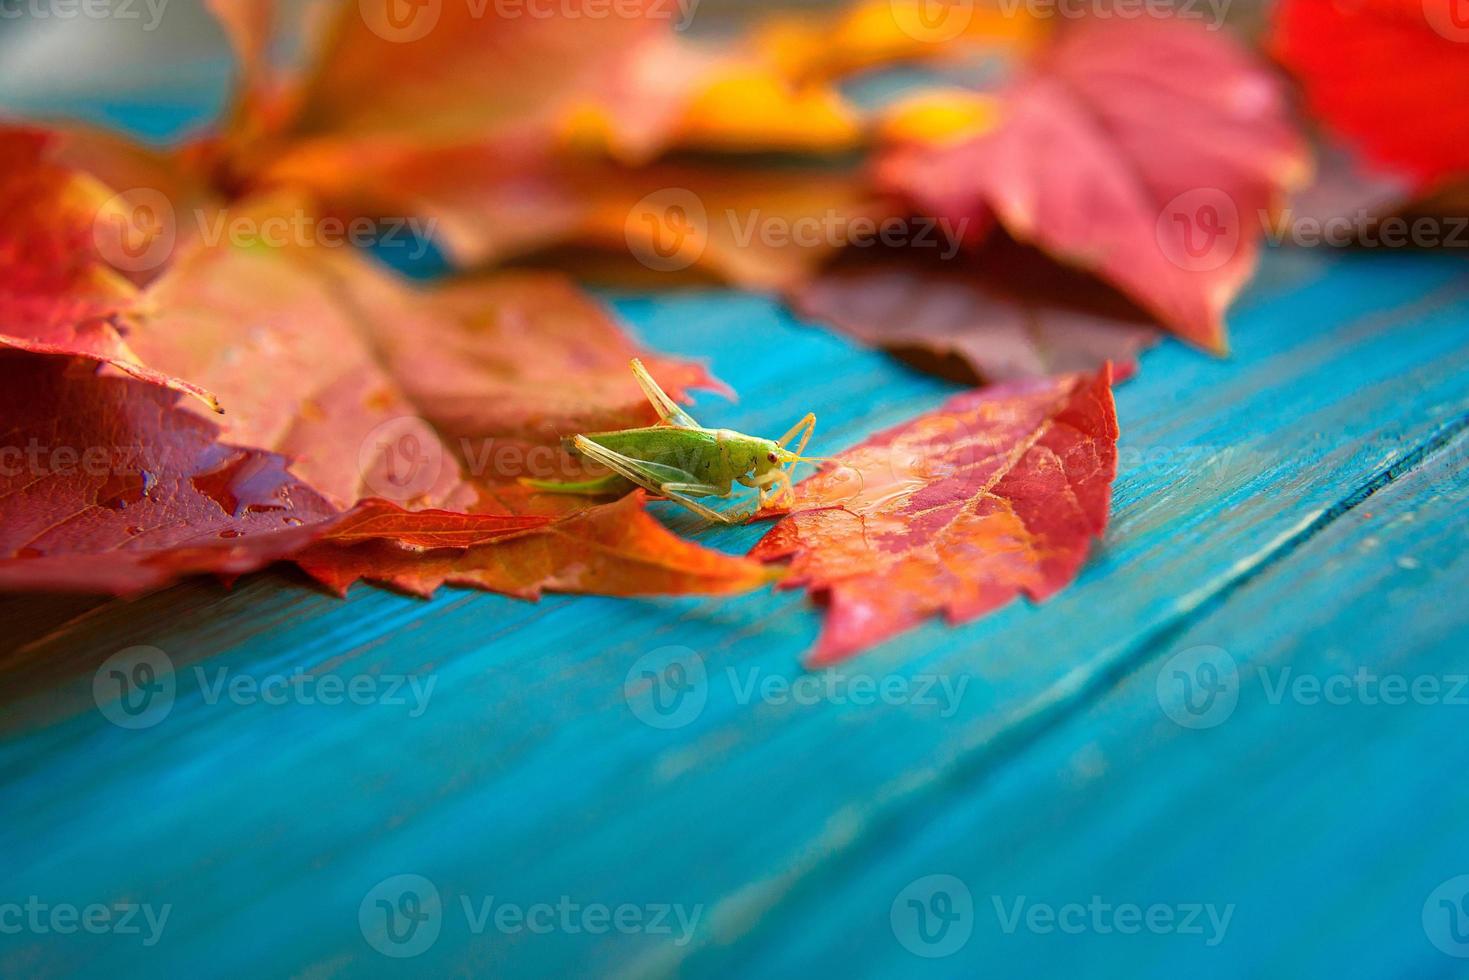 gräshoppa i de färgrik höst löv på blå och brun trä- bakgrund foto